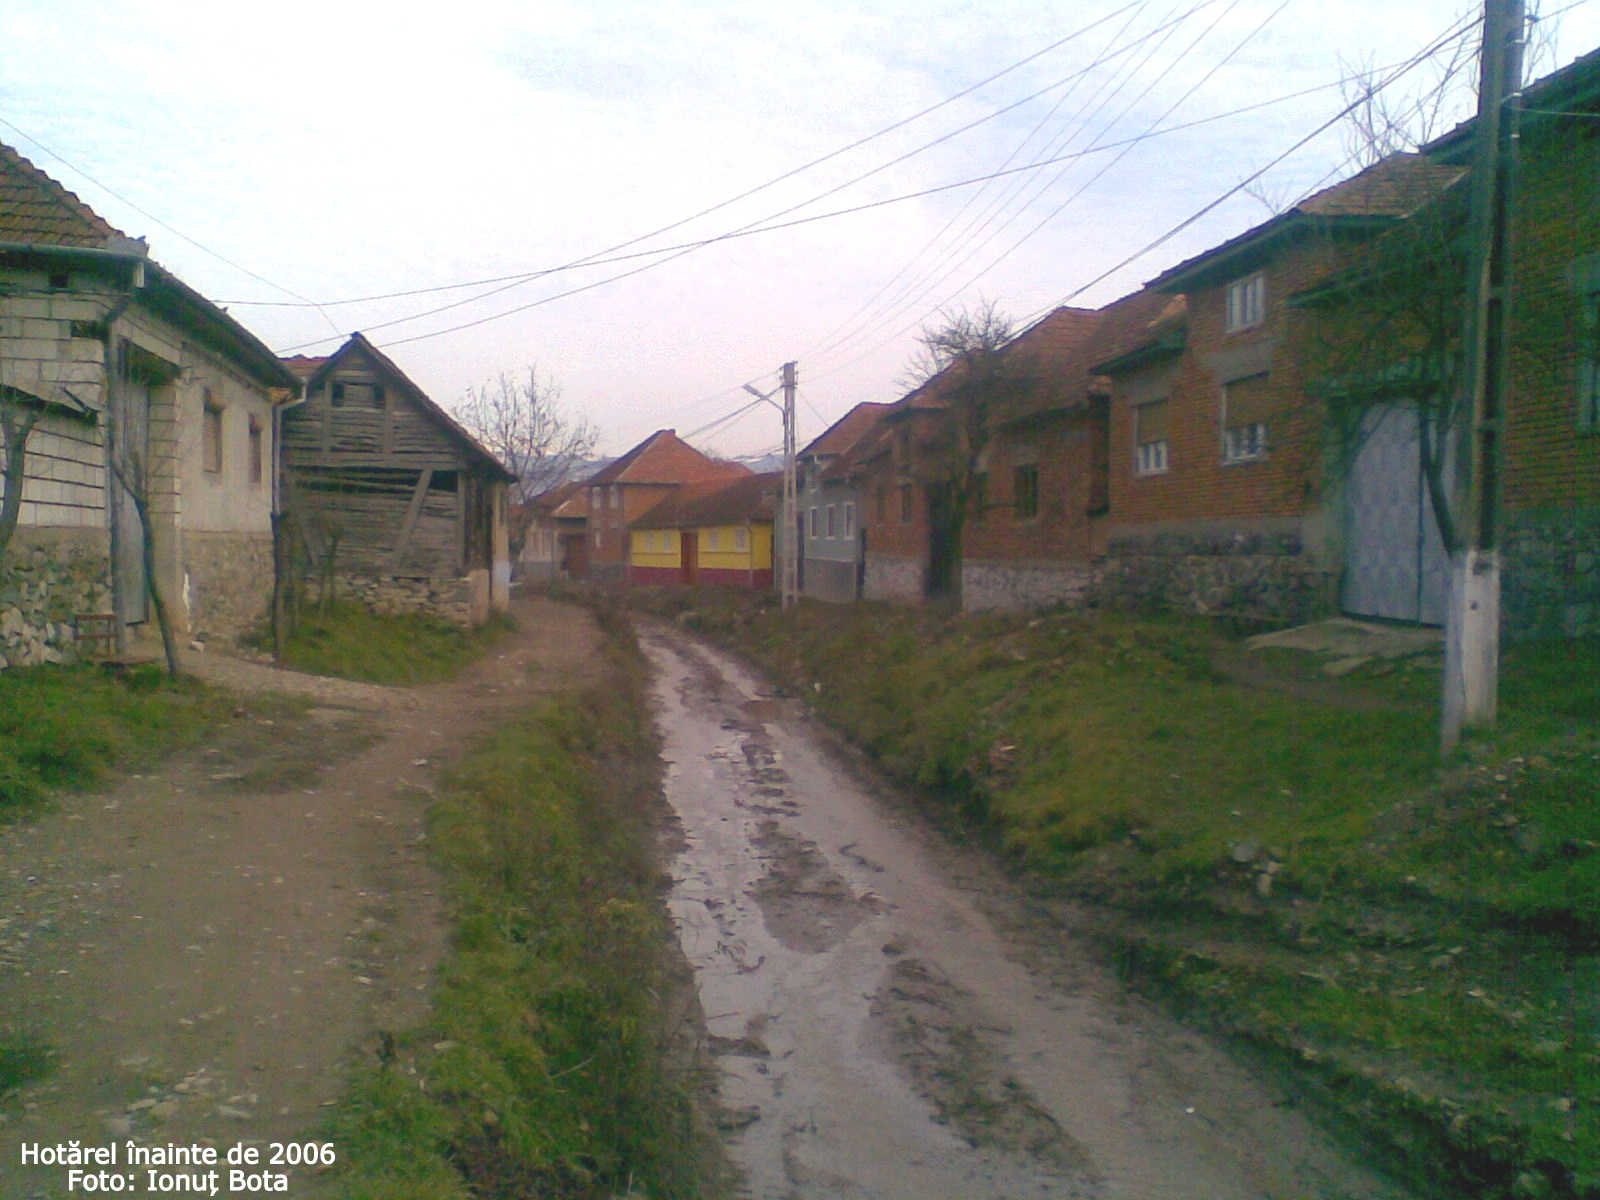 Hotarel, Bihor, Romania - inainte de 2006 ; satul Hotarel comuna Lunca judetul Bihor Romania